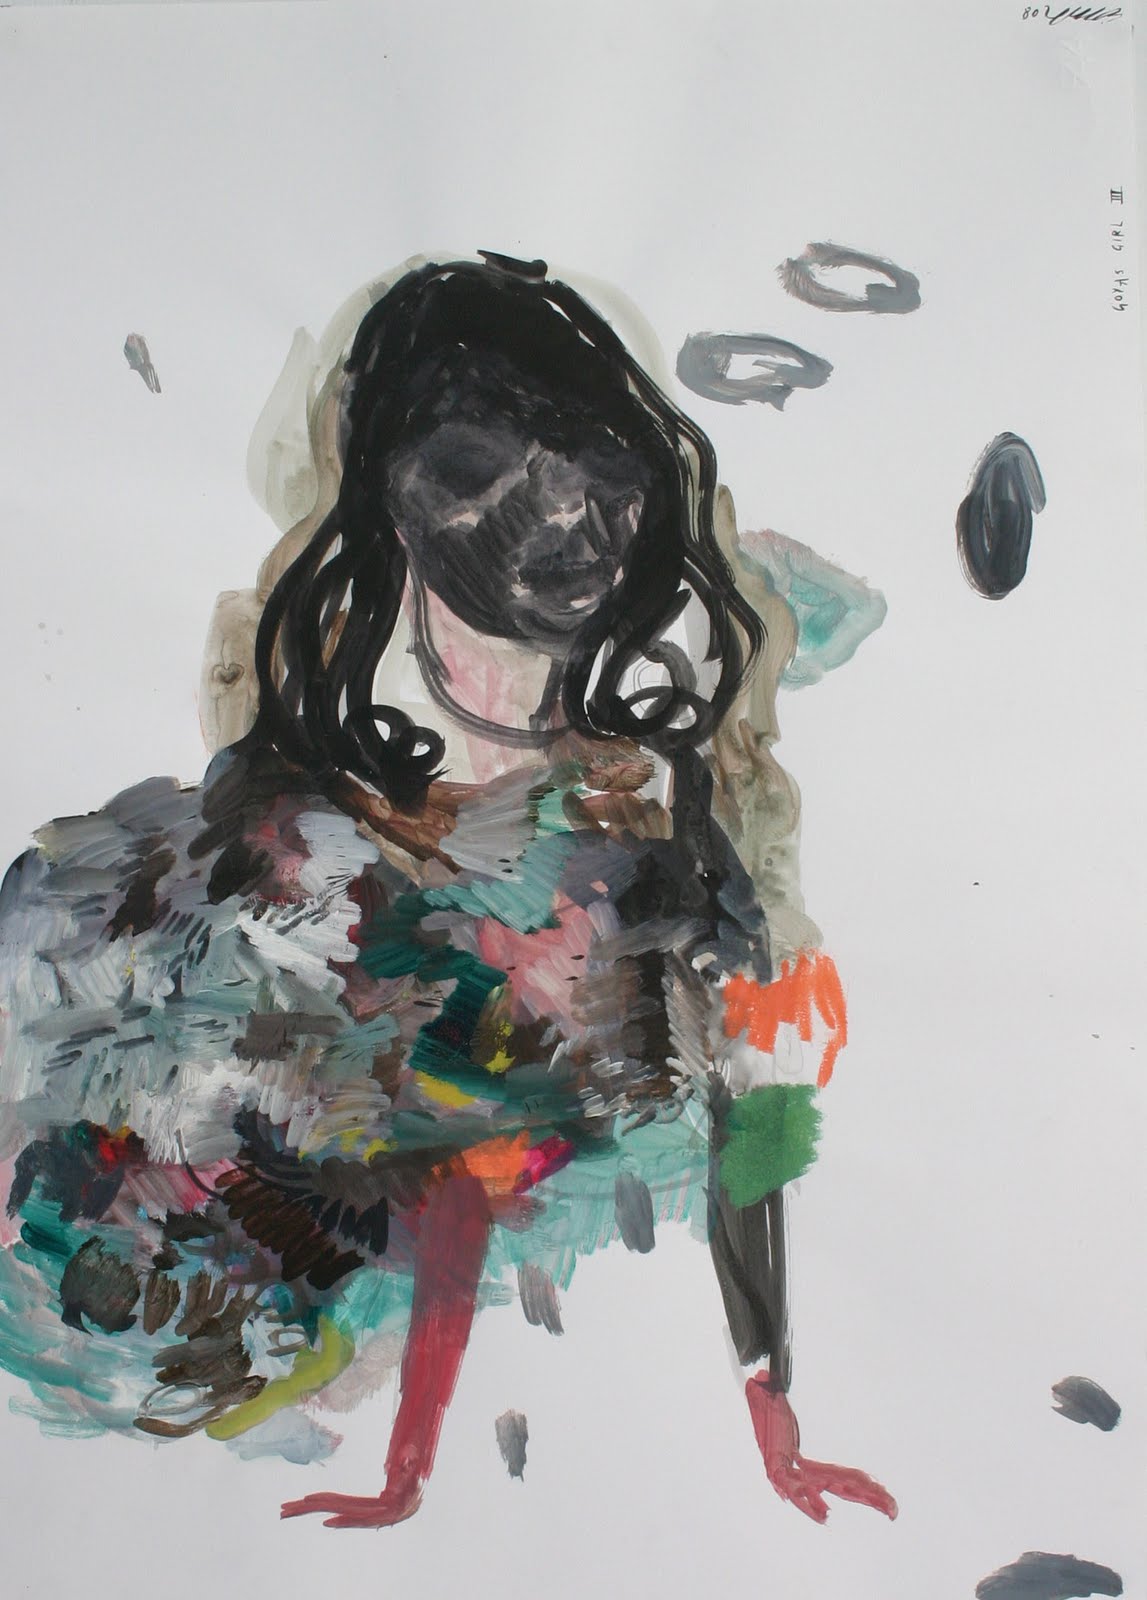 Emma Smith, "Goya's Girl III" (2008).